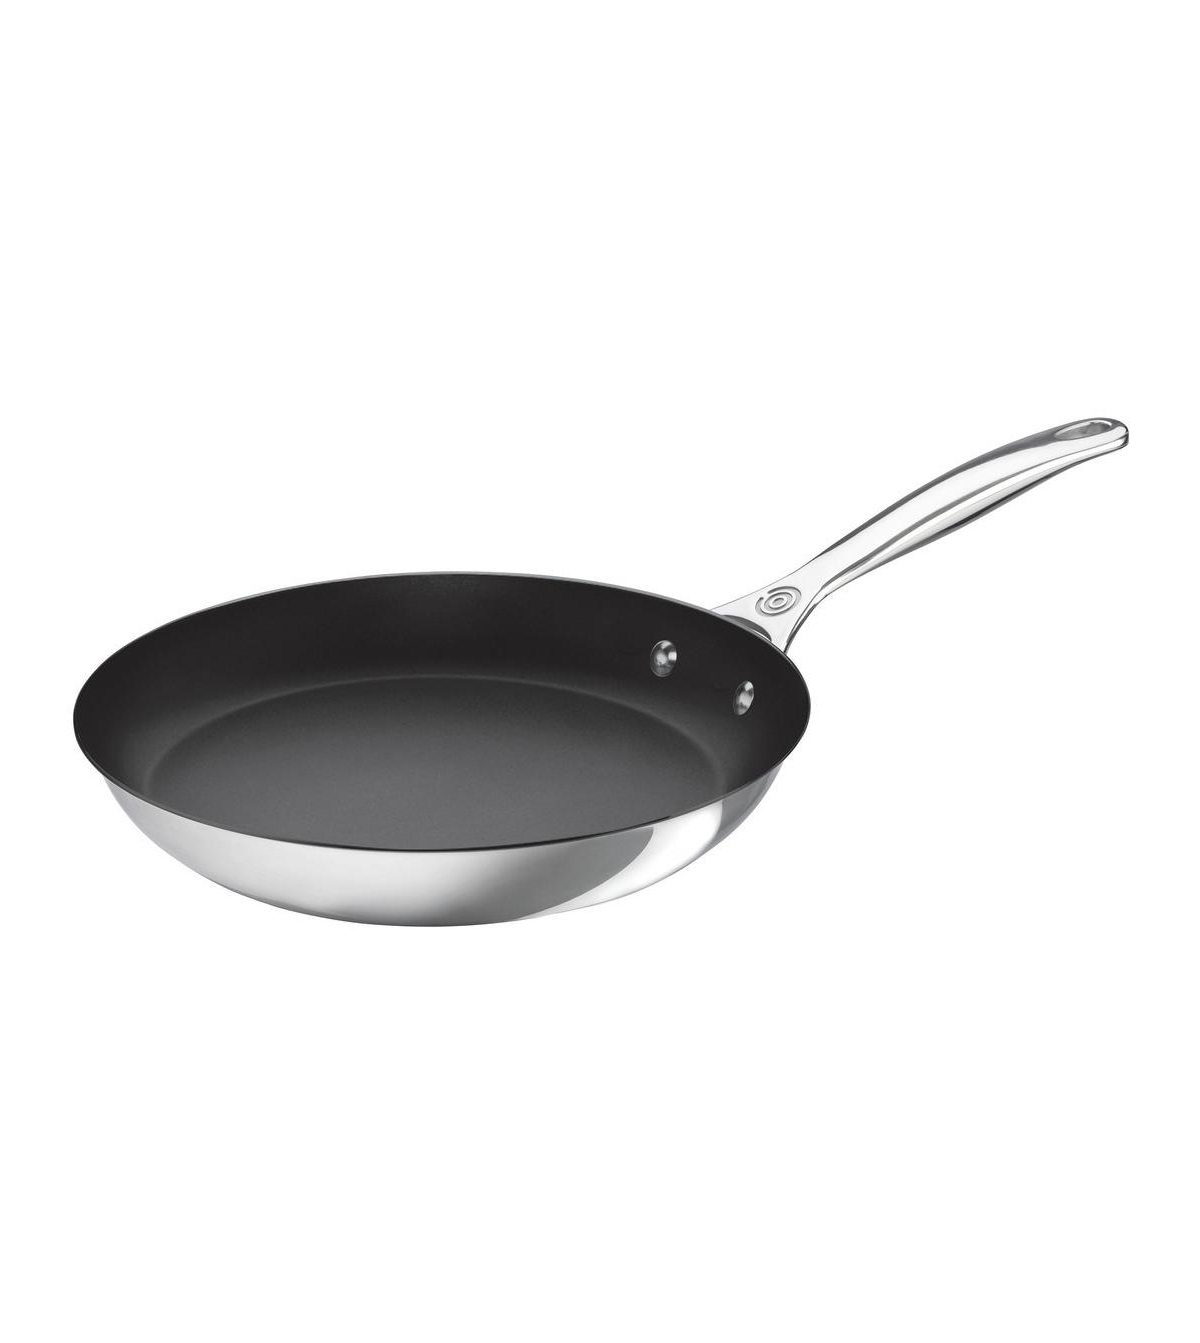 Le Creuset 12" Nonstick Frying Pan In N,a